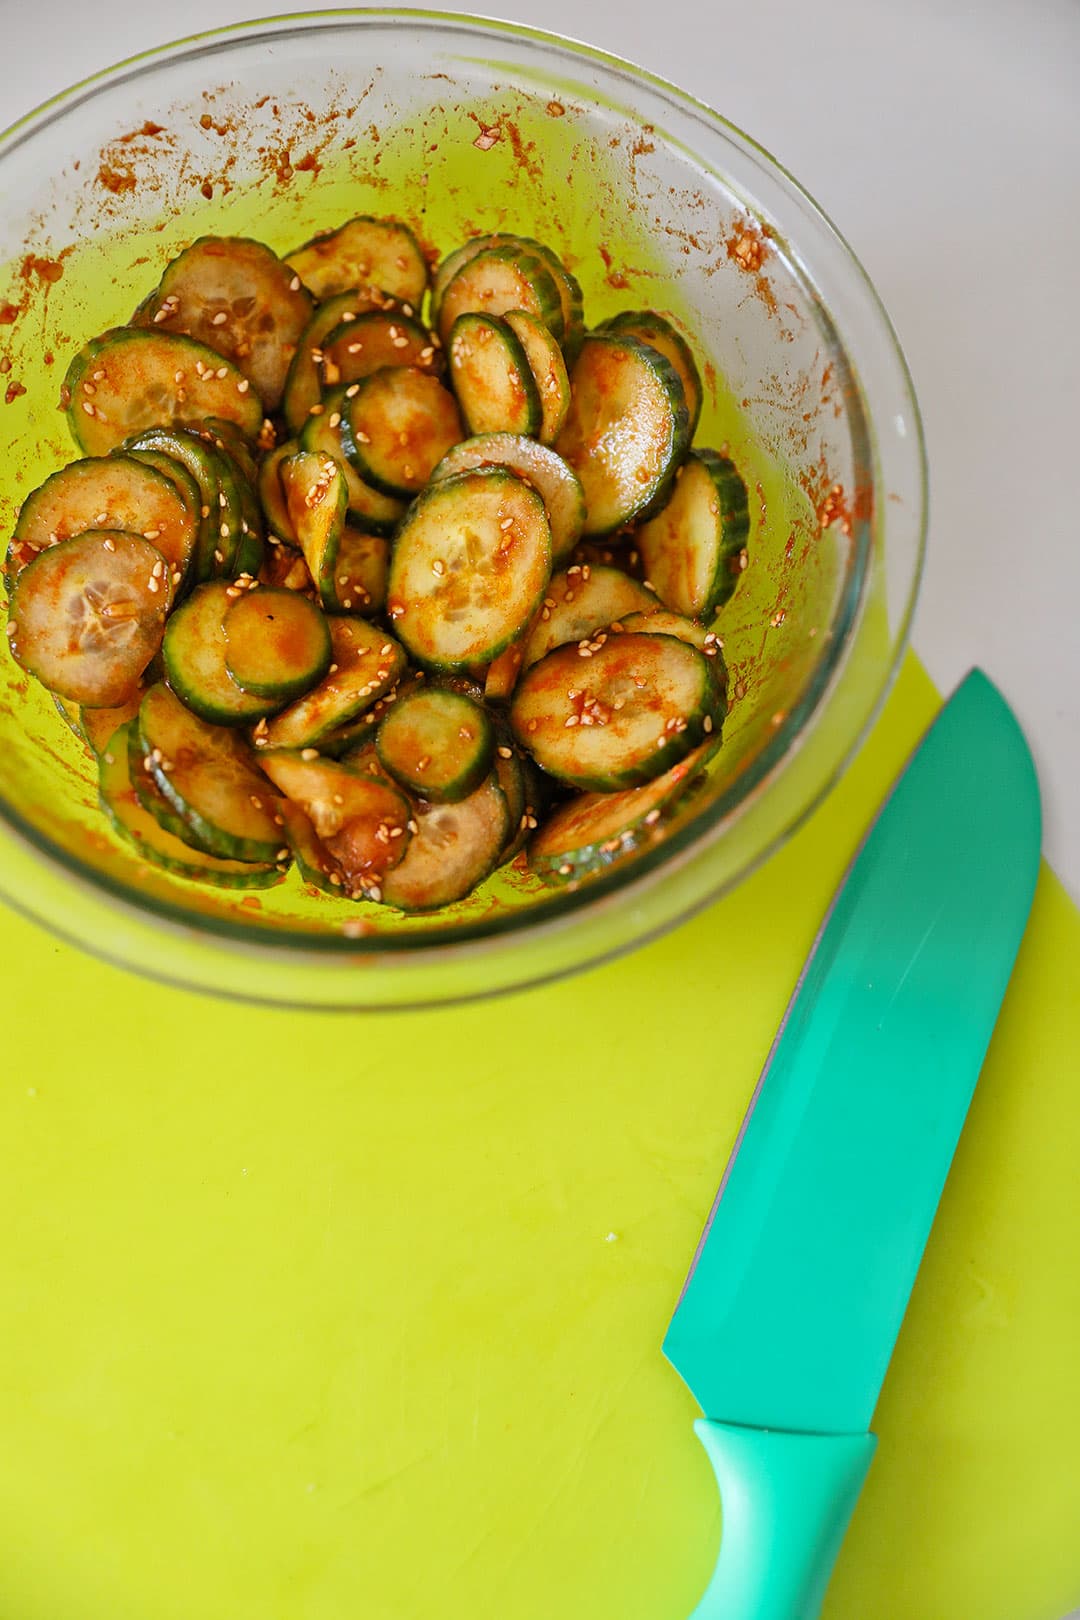 Korean Cucumber Salad Recipe - Mom's Authentic Korean Cucumber Side Dish